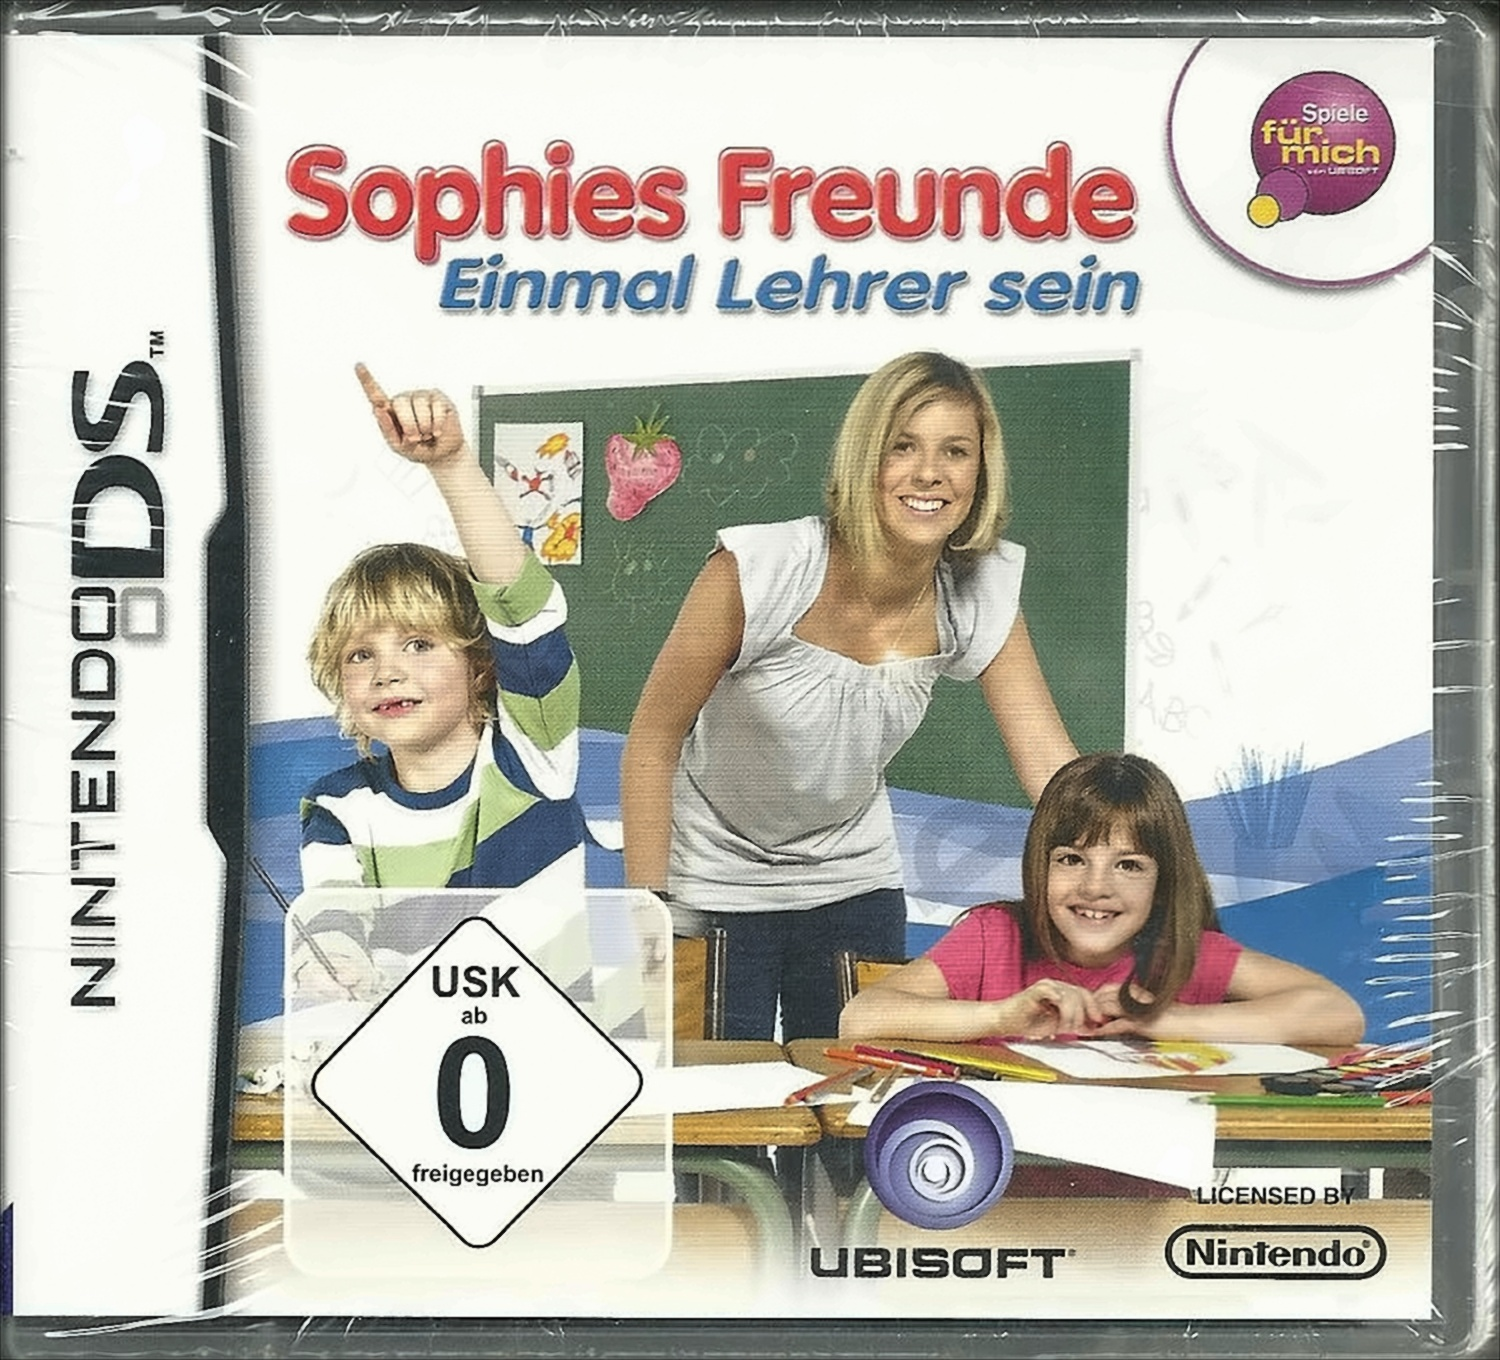 Sophies Freunde DS] - - [Nintendo Lehrer sein Einmal